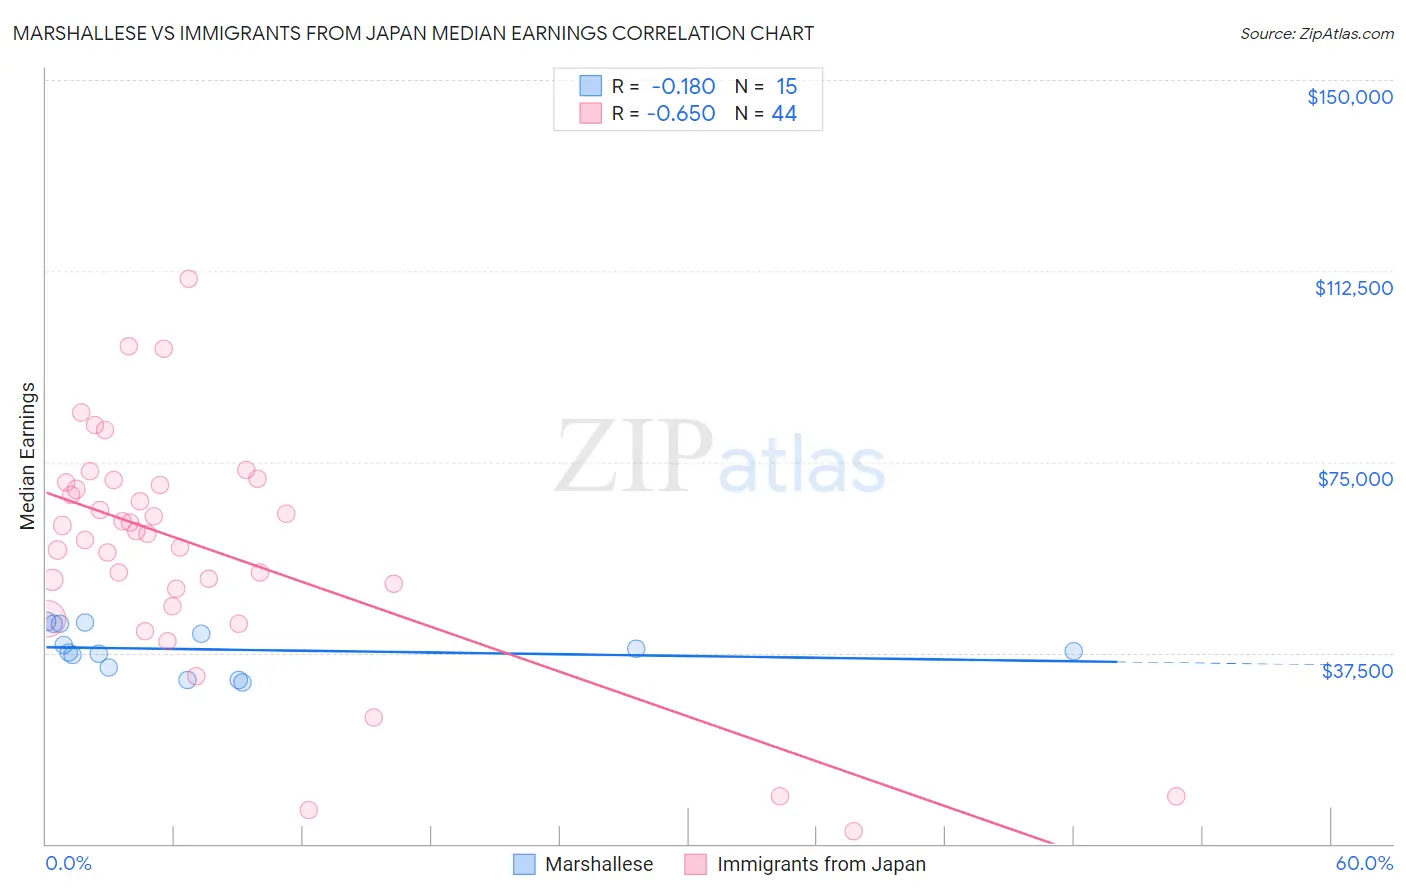 Marshallese vs Immigrants from Japan Median Earnings